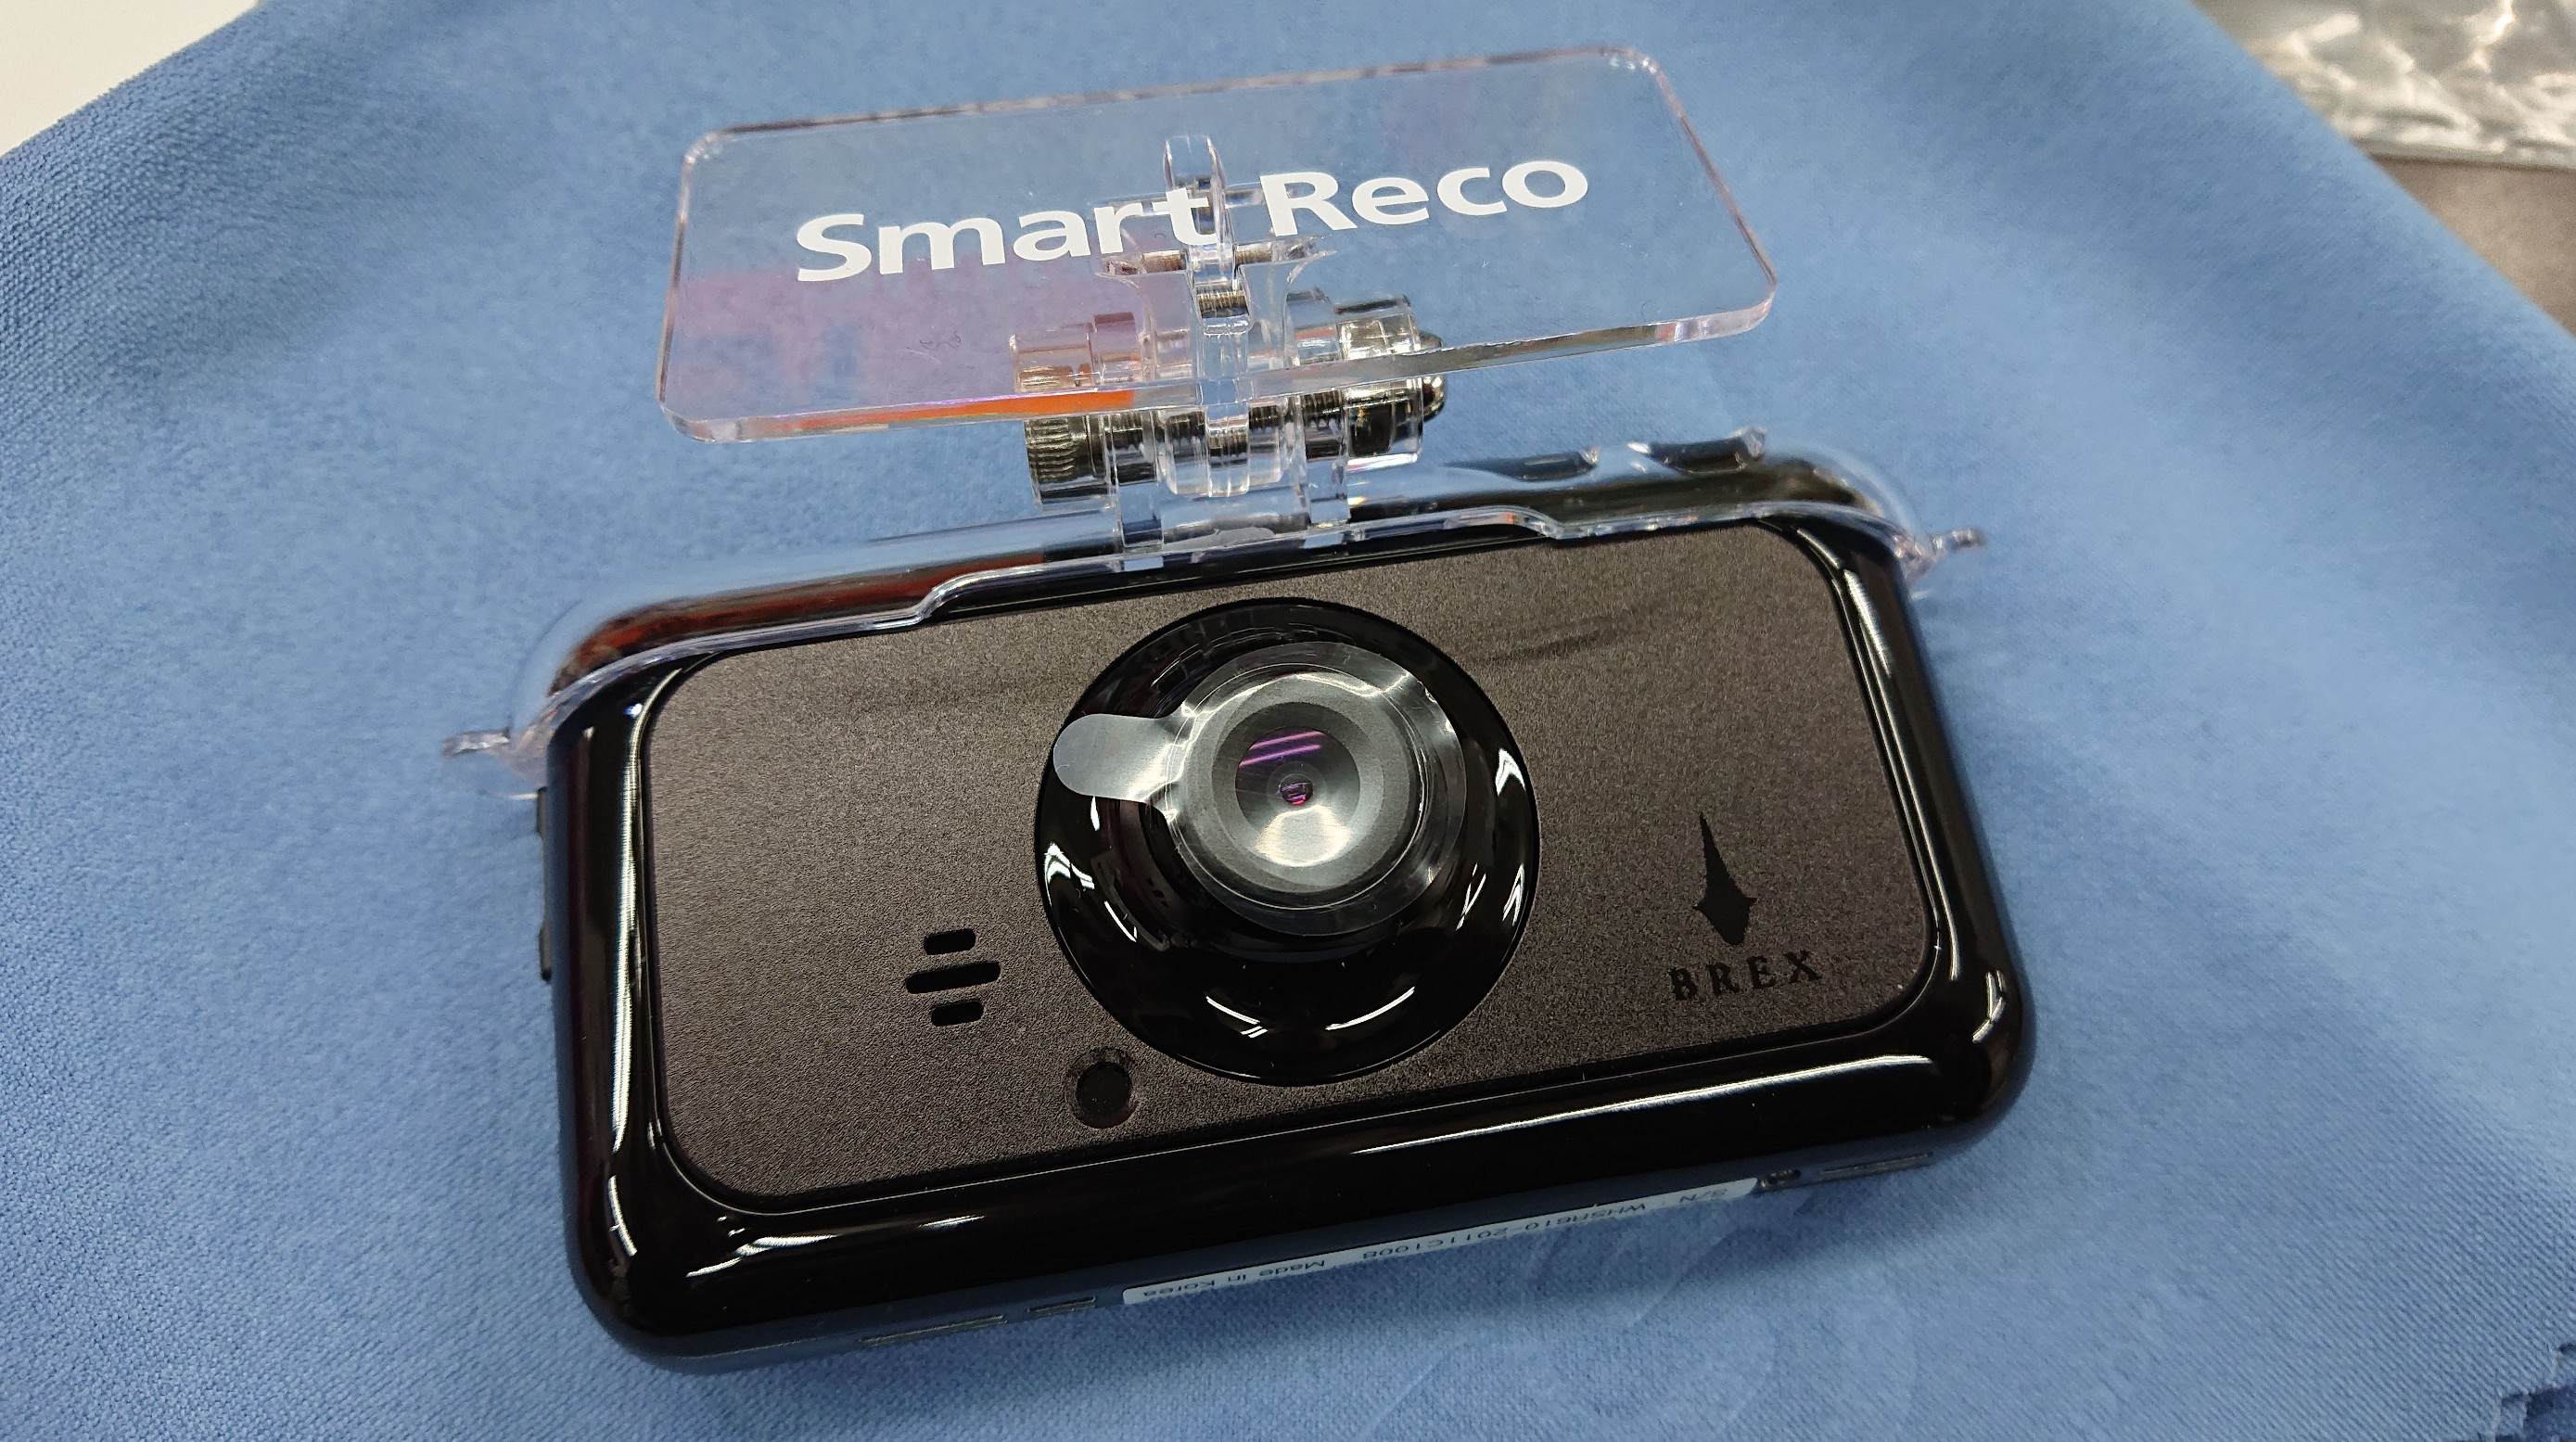 ブレックス ドライブレコーダーの新商品 SmartReco BCC610 & 専用リア 